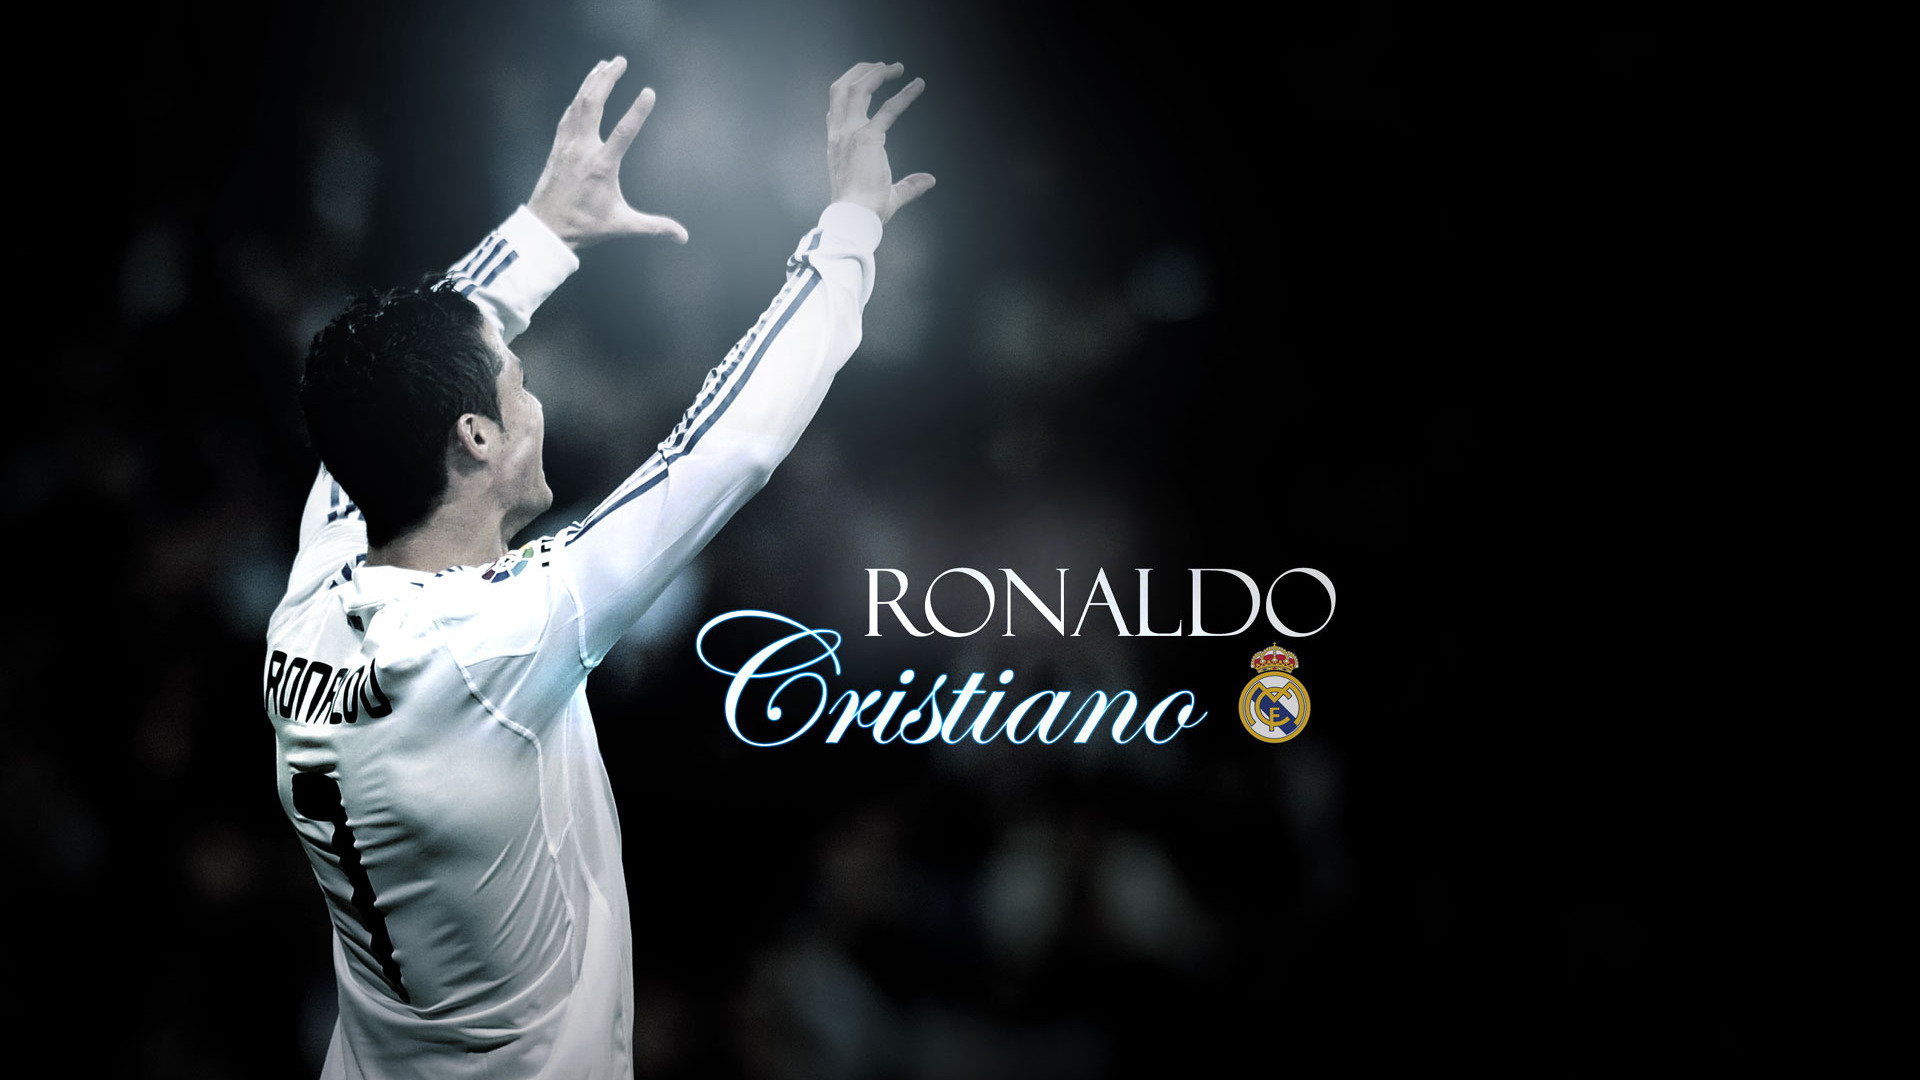 Cristiano Ronaldo Wallpaper Pictures Image